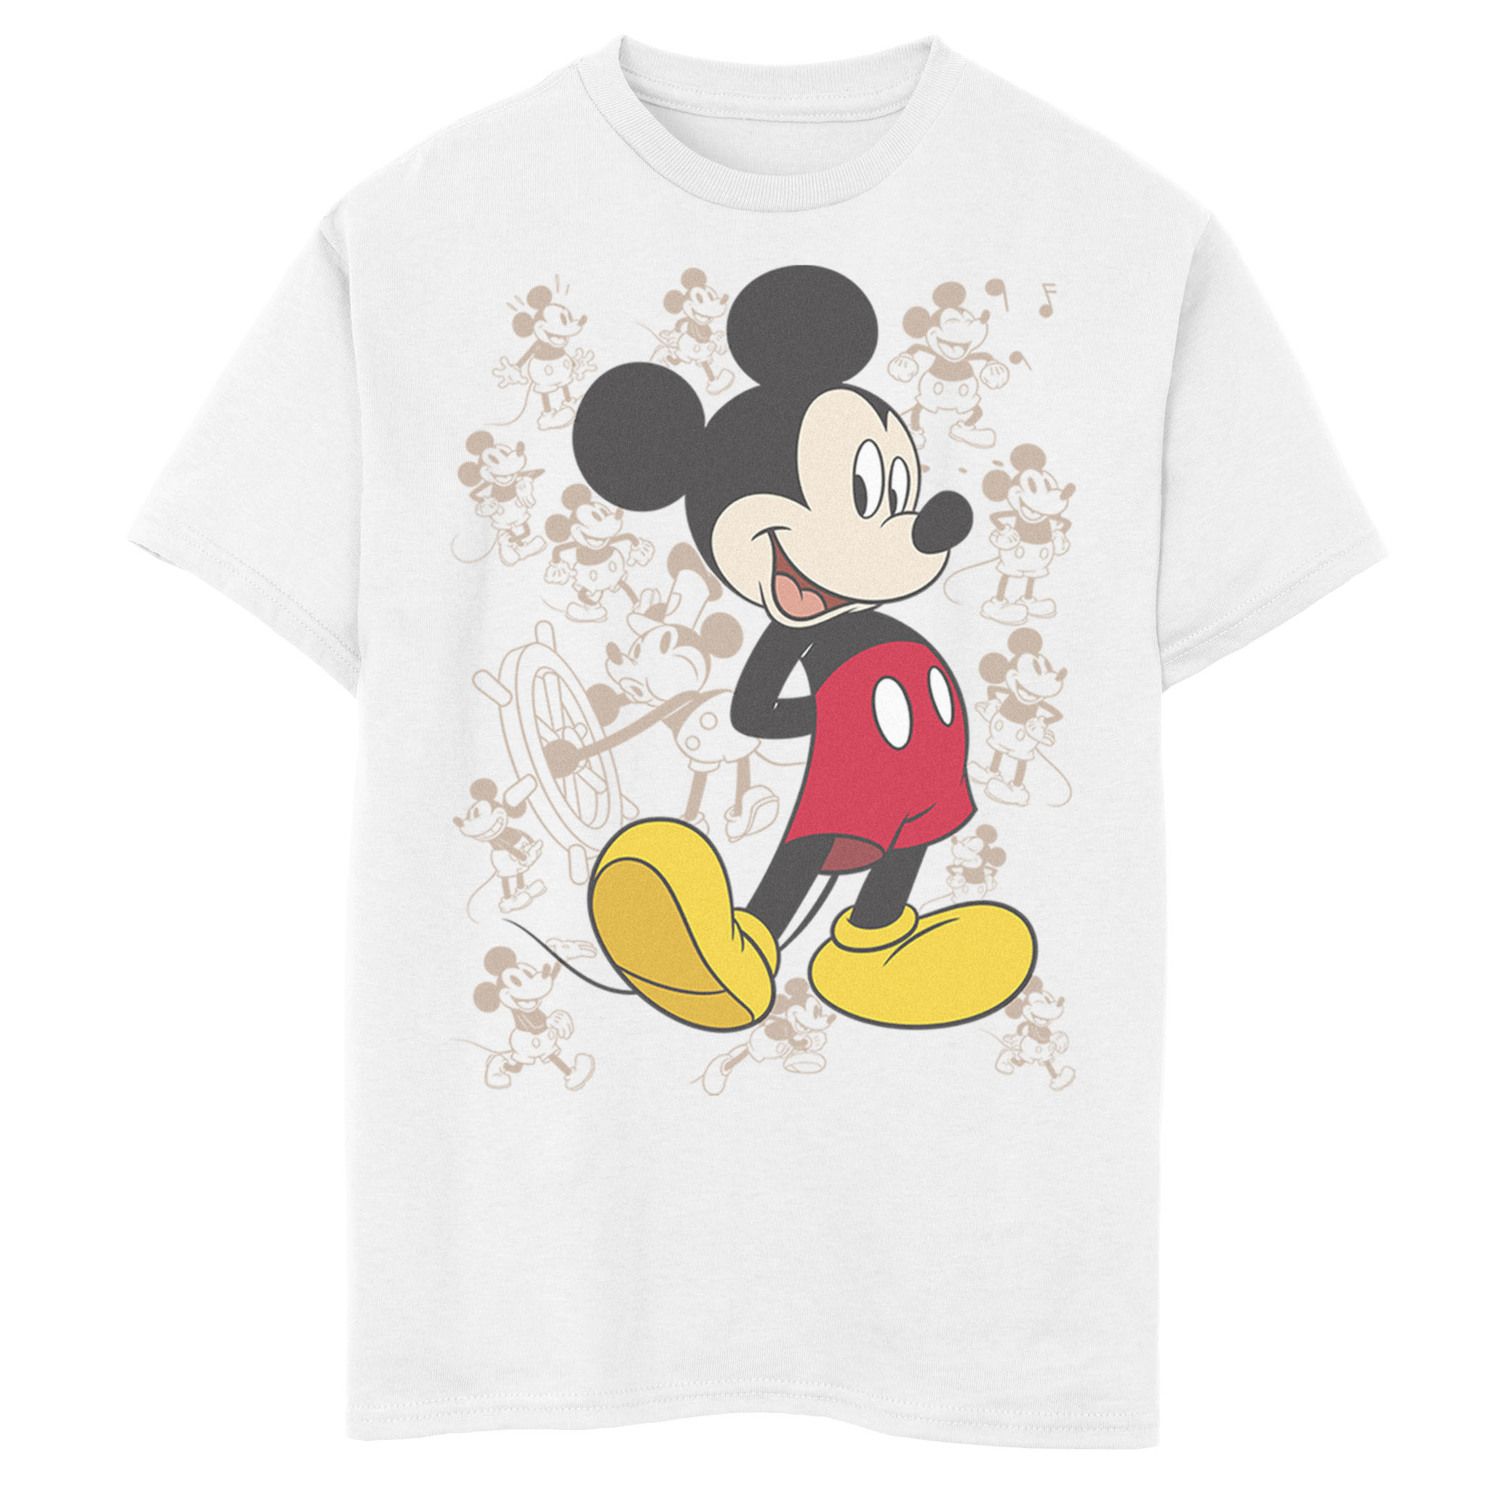 Футболка с изображением Микки Мауса Disney для мальчиков 8–20 лет и рисунком «Множество Микки» Disney толстовка с рисунком микки мауса disney для мальчиков 8–20 лет красно белая и с рисунком микки disney